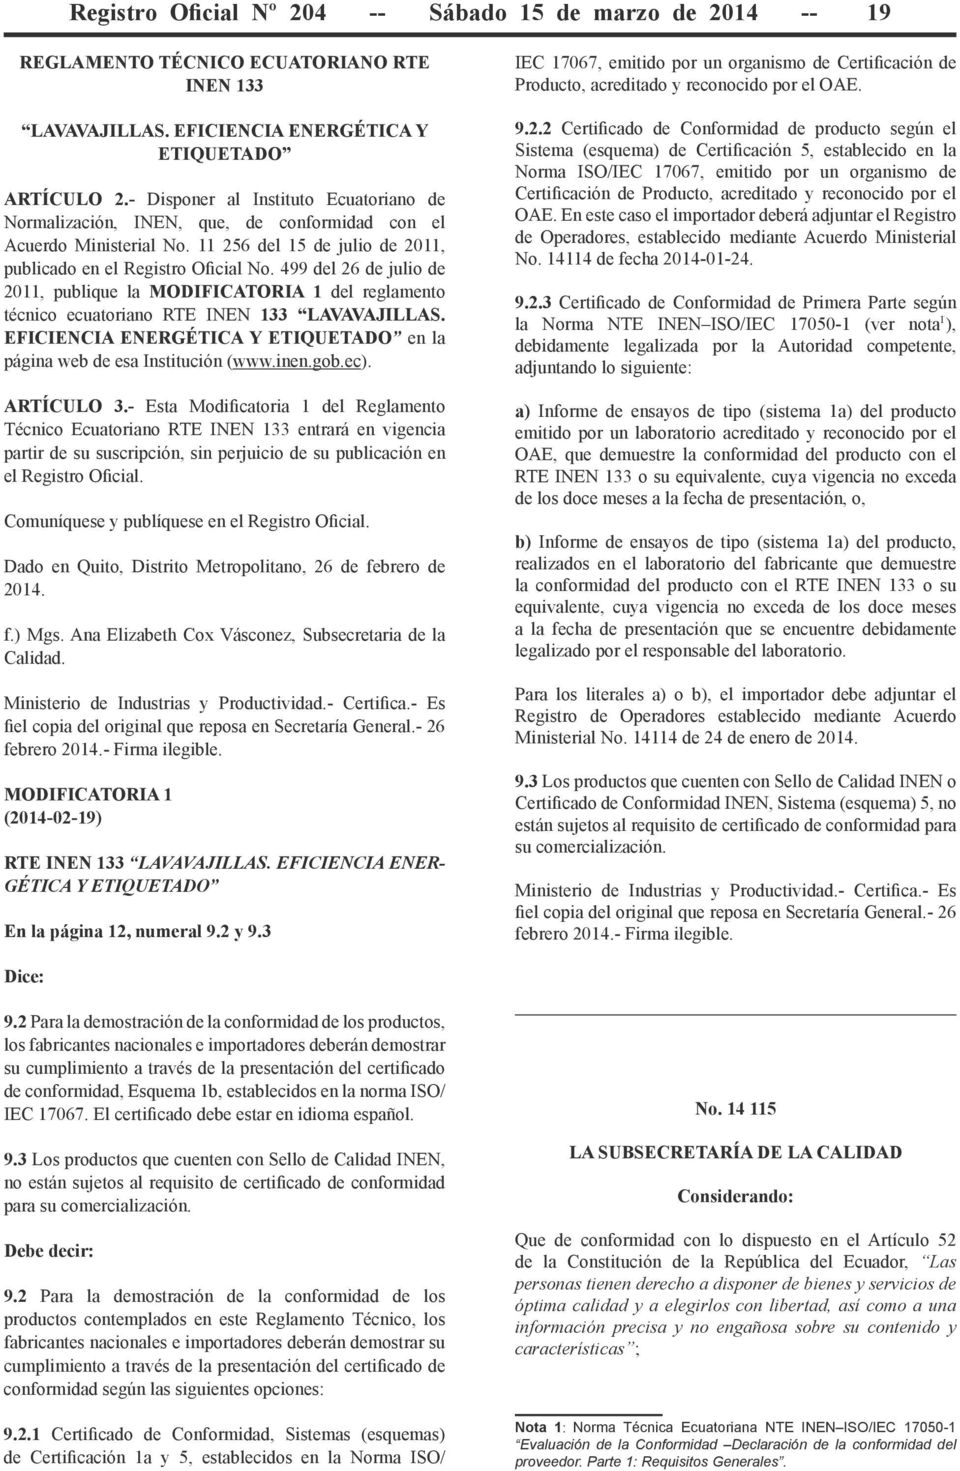 499 del 26 de julio de 2011, publique la MODIFICATORIA 1 del reglamento técnico ecuatoriano RTE INEN 133 LAVAVAJILLAS. EFICIENCIA ENERGÉTICA Y ETIQUETADO en la página web de esa Institución (www.inen.